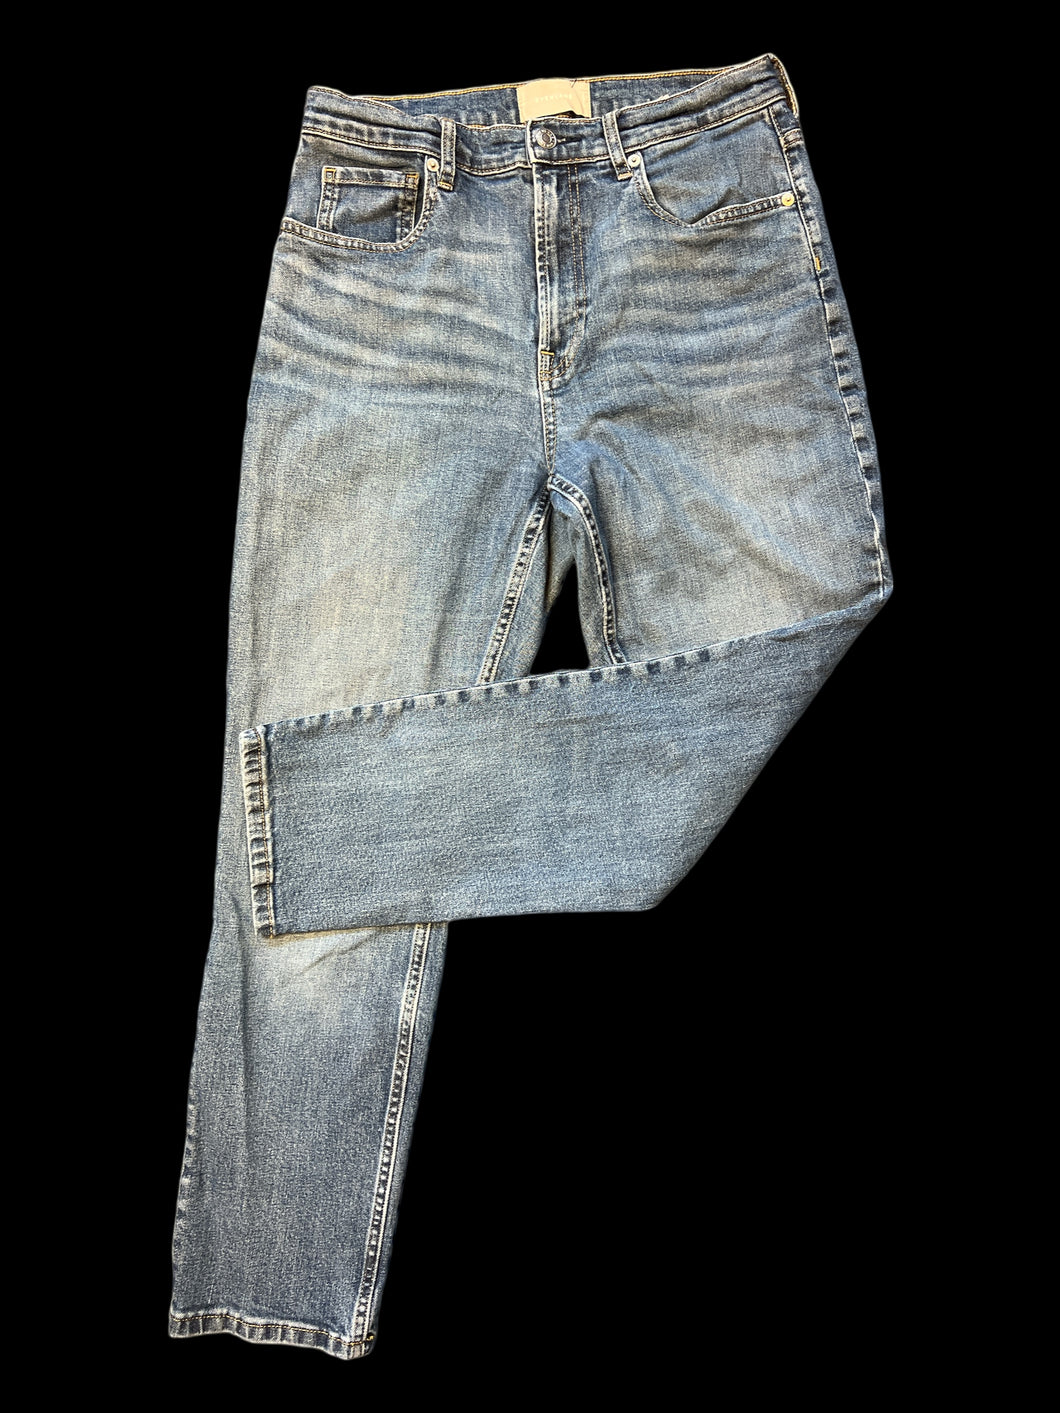 M Blue denim high waist pants w/ slight fading, straight legs, pockets, belt loops, & button/zipper closure